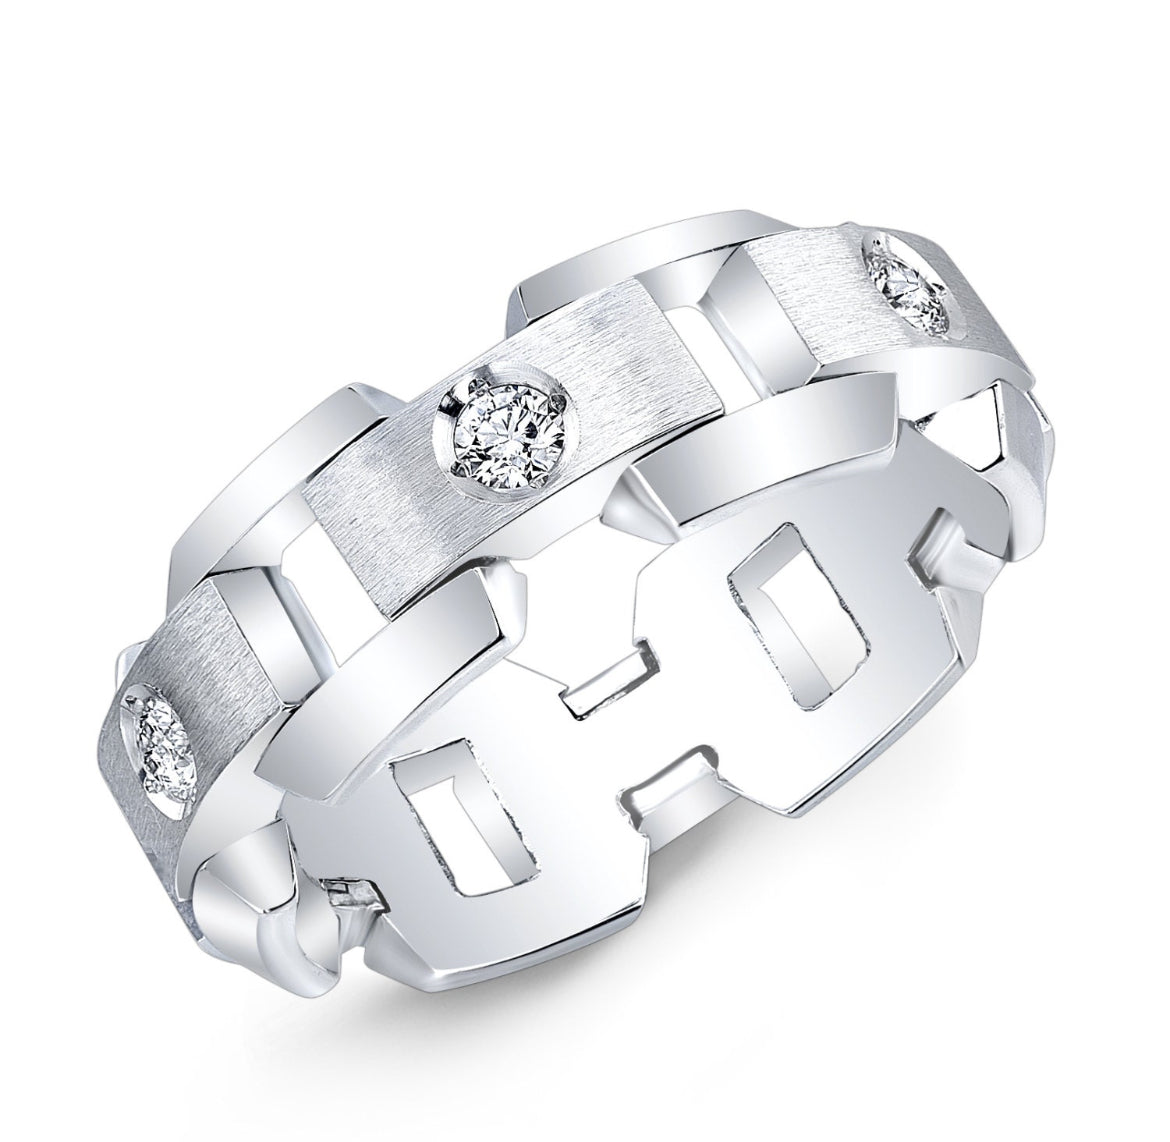 Men's Platinum diamond wedding ring and women’s 14k yellow band